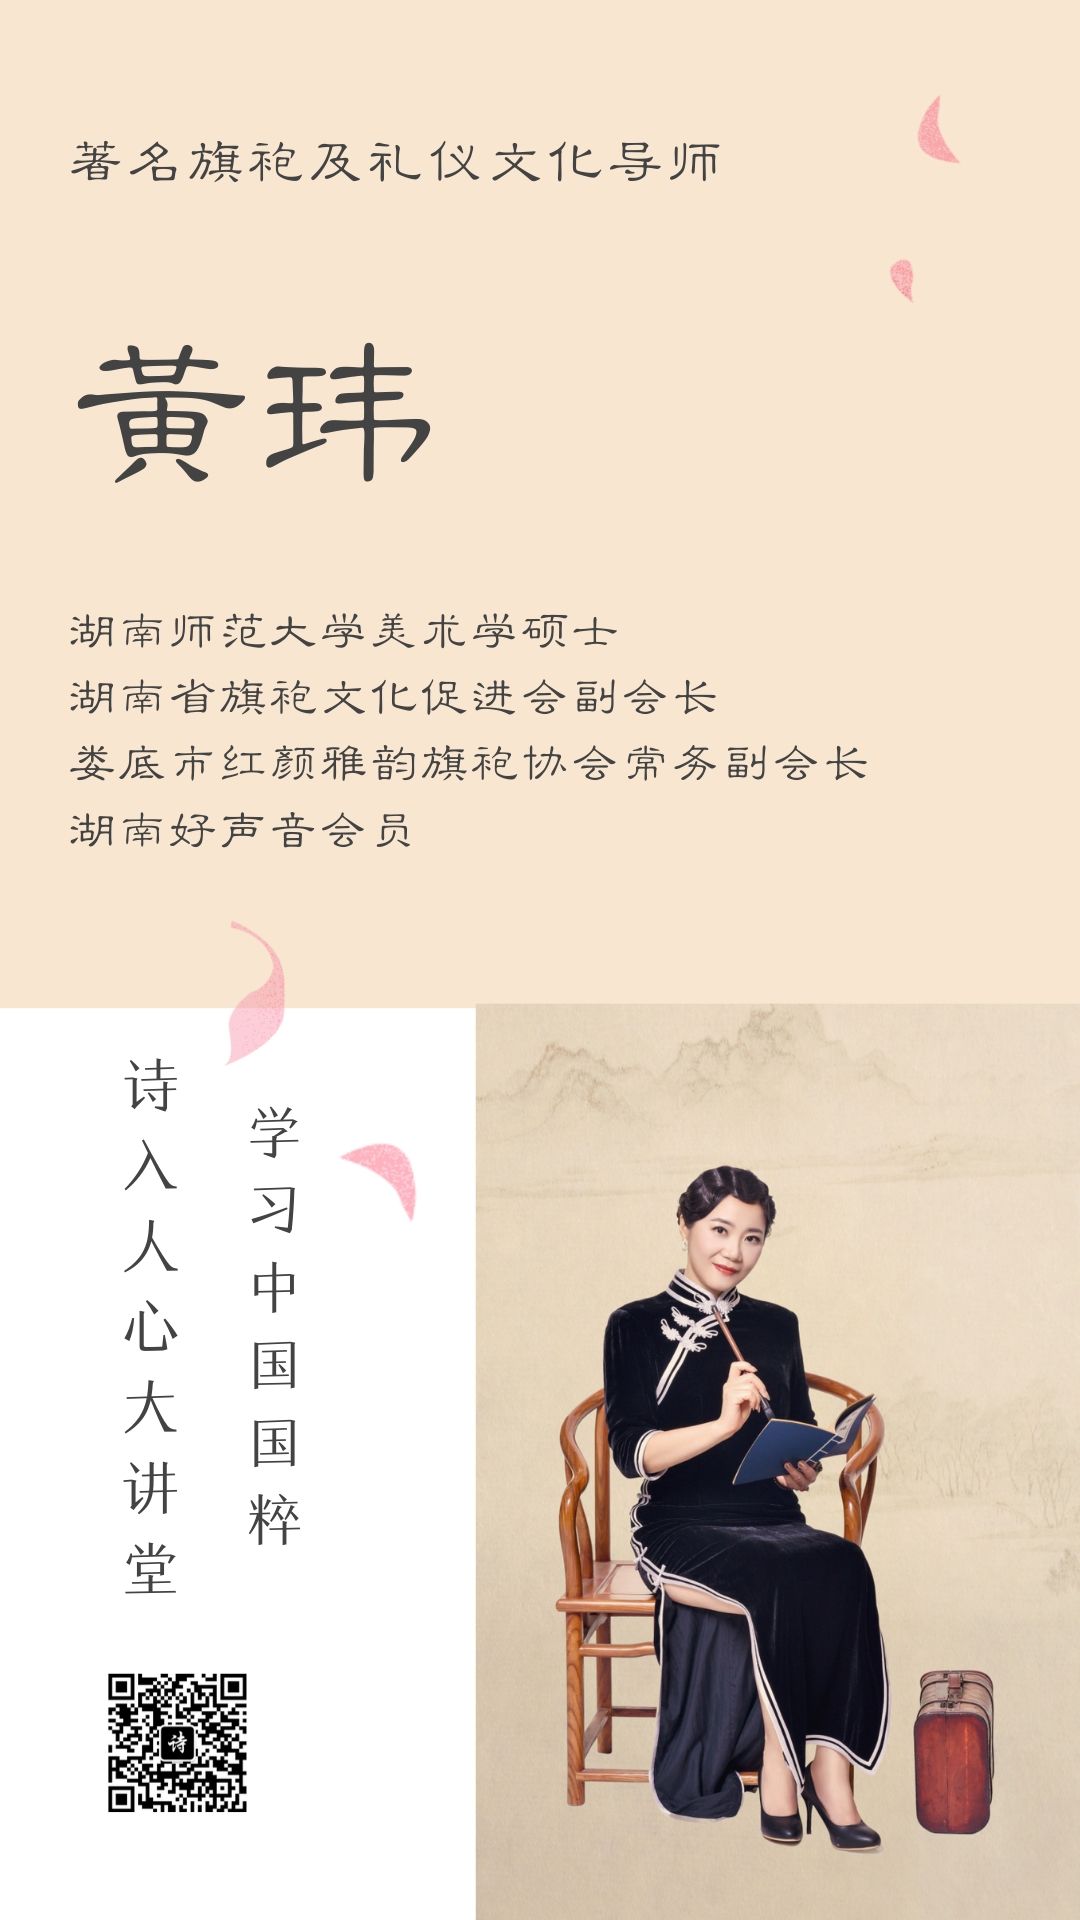 粉白色侧脸女神照片女生节宣传中文手机海报 (2).jpg